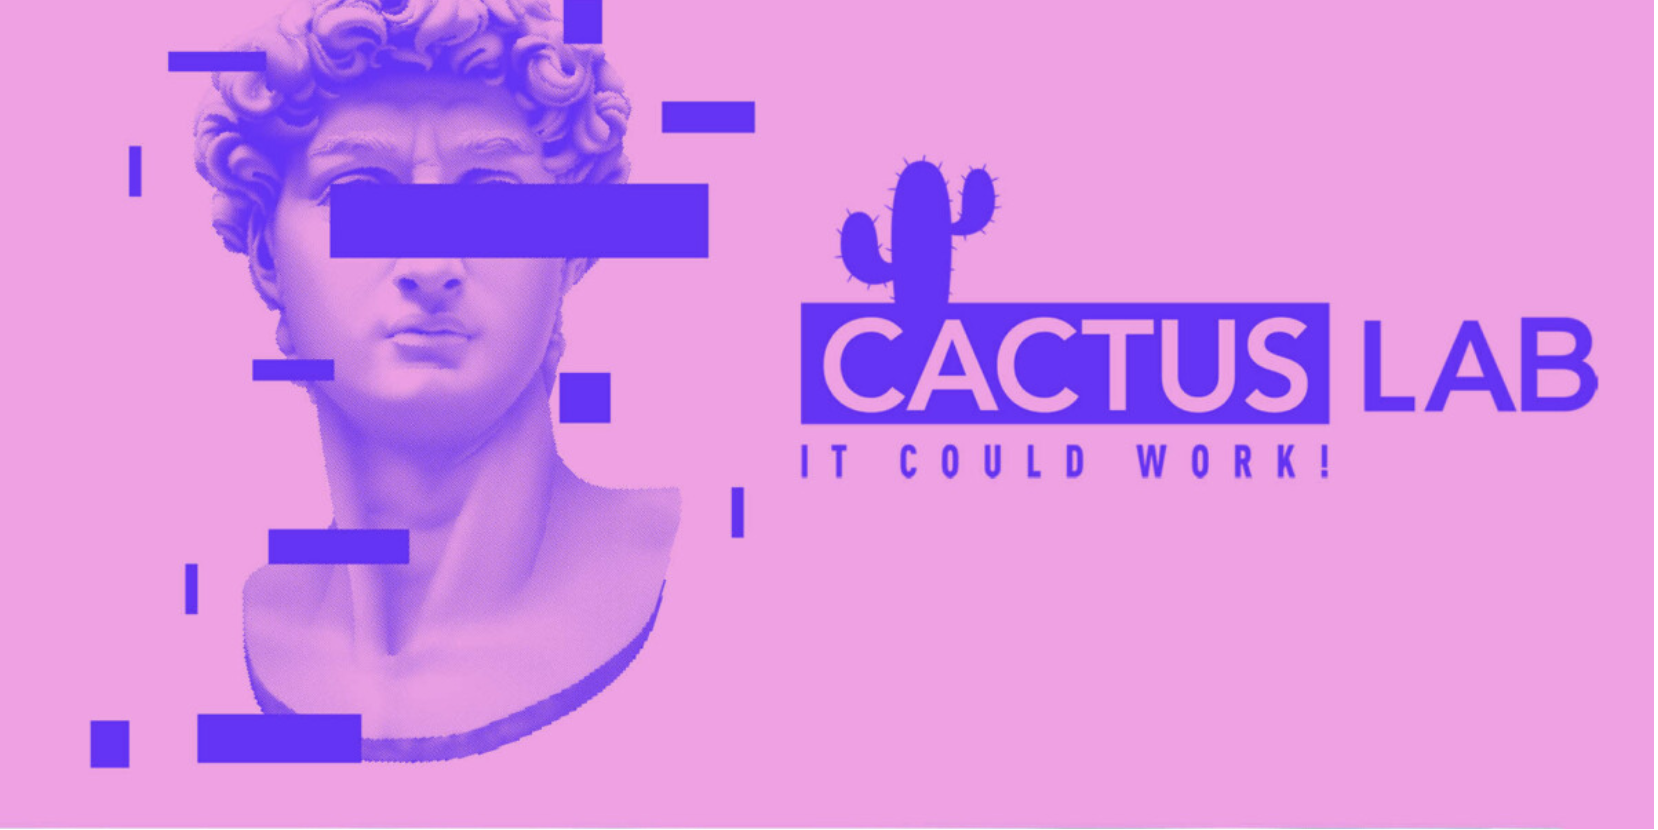 Cactus Lab, it could work!: un laboratorio per giovani